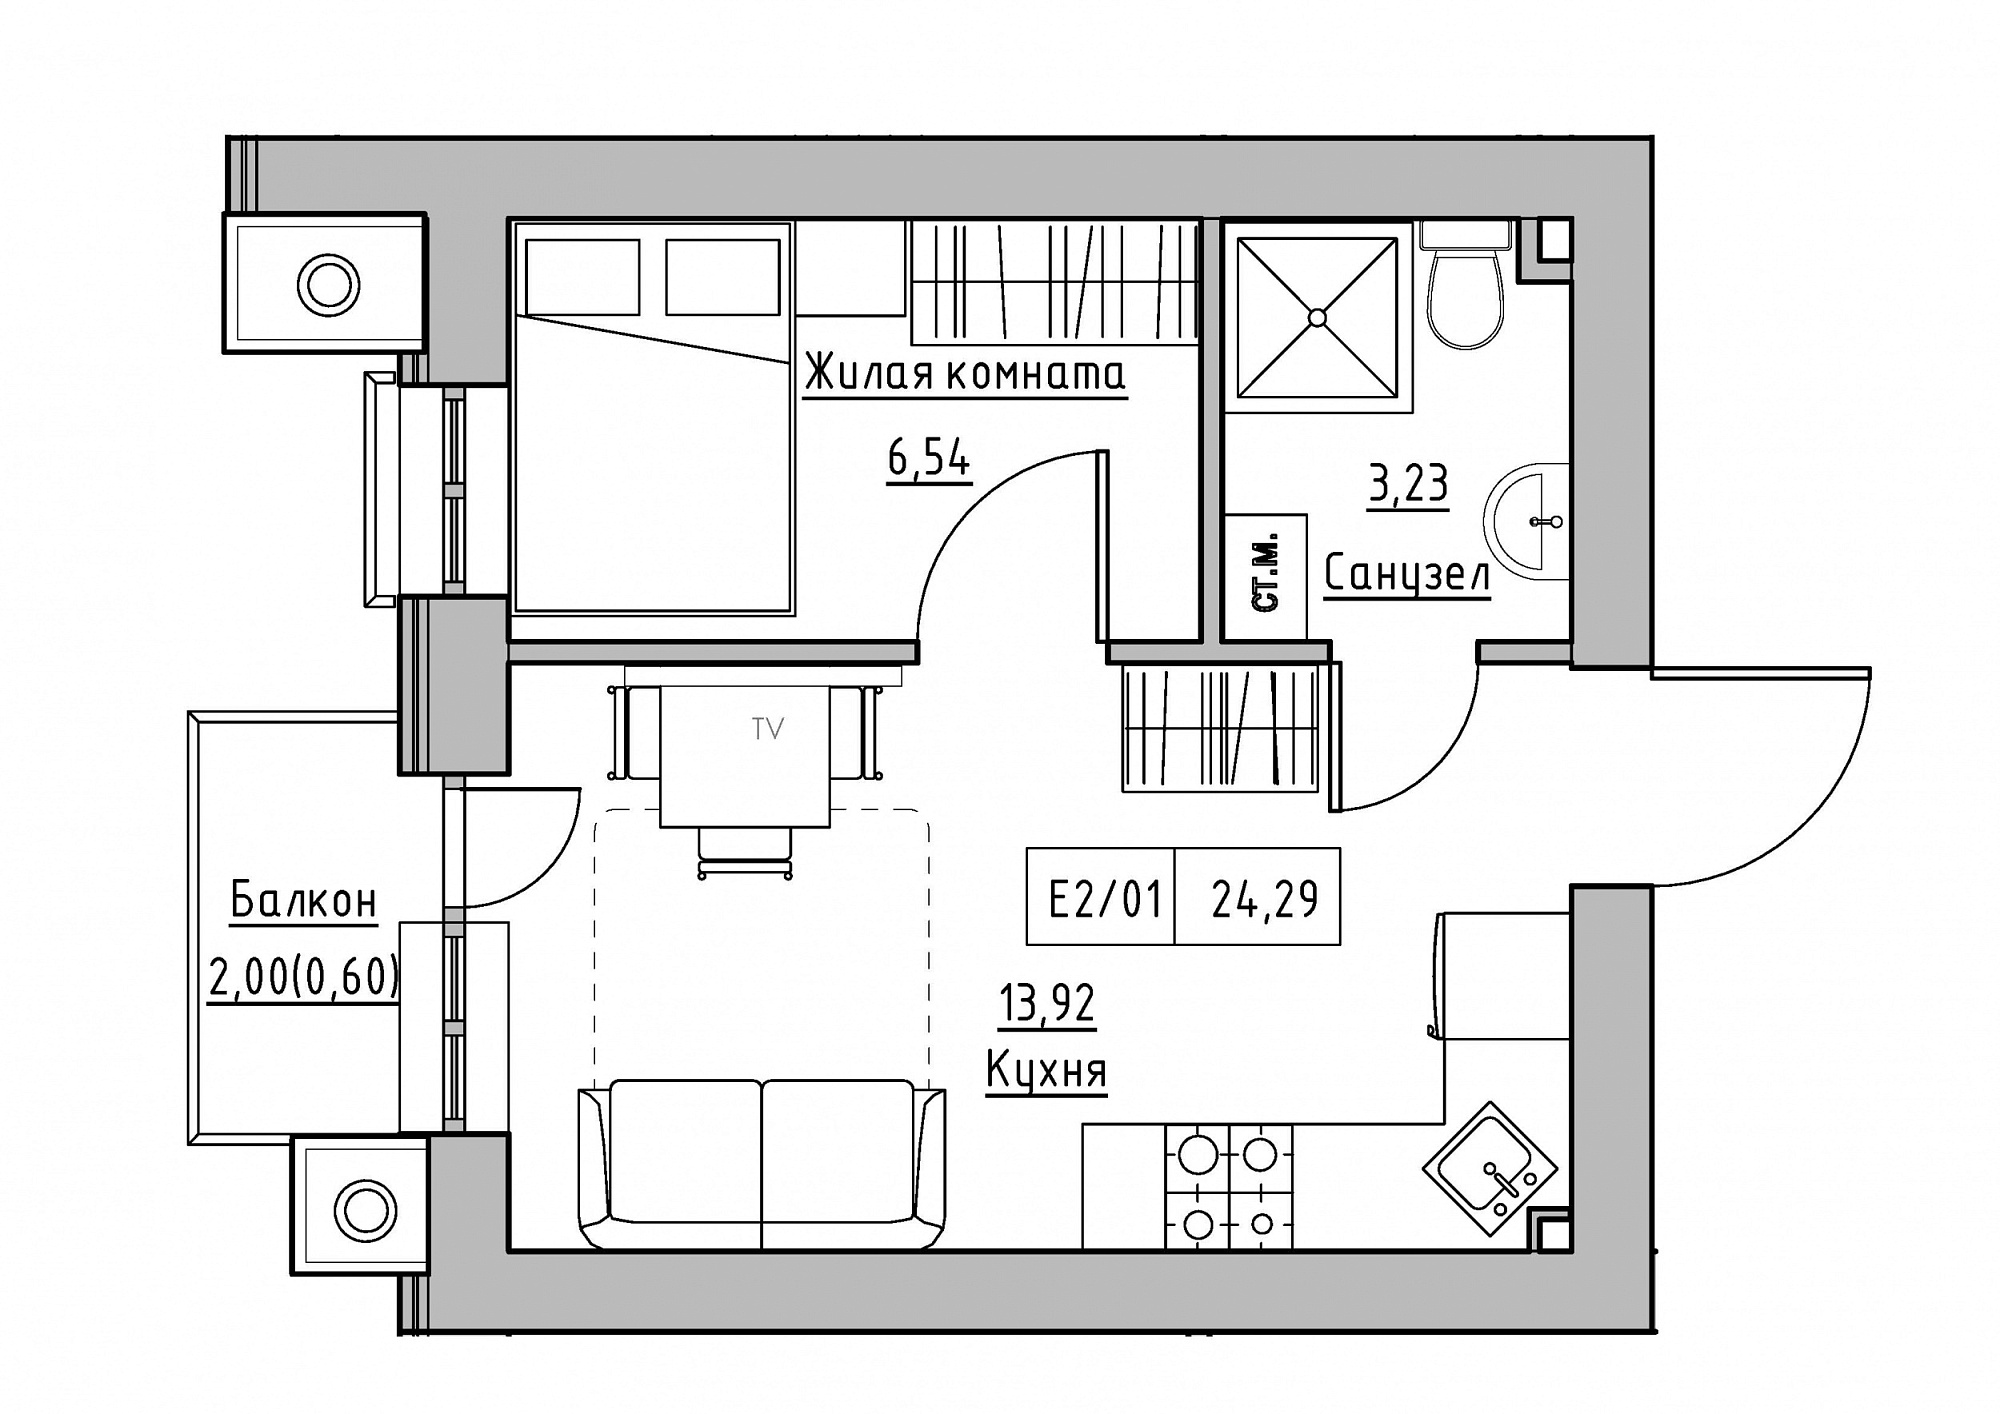 Планировка 1-к квартира площей 24.29м2, KS-012-02/0009.